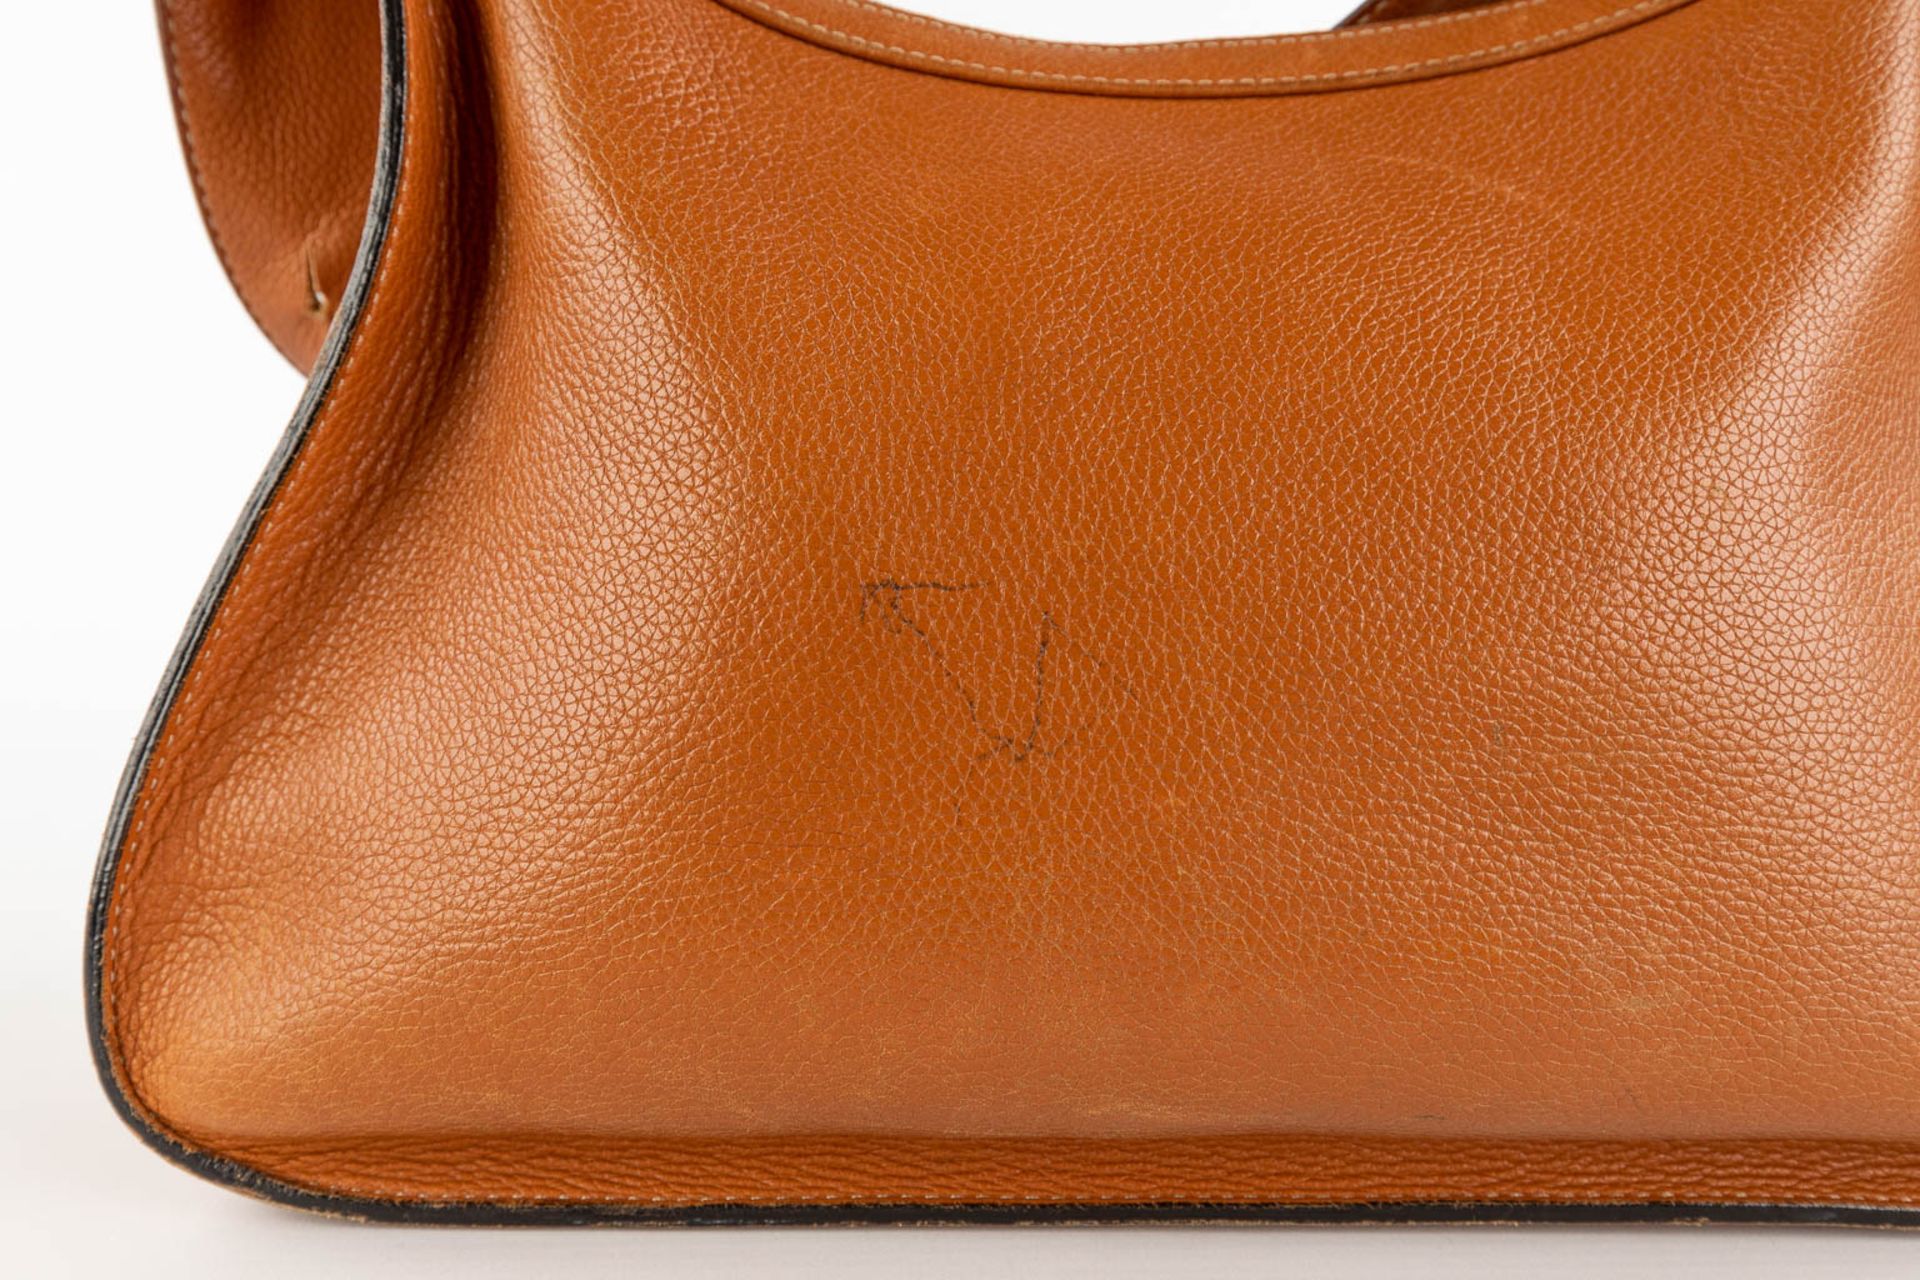 Delvaux, Pensée, a handbag made of brown leather. (W:24 x H:32 cm) - Bild 14 aus 18